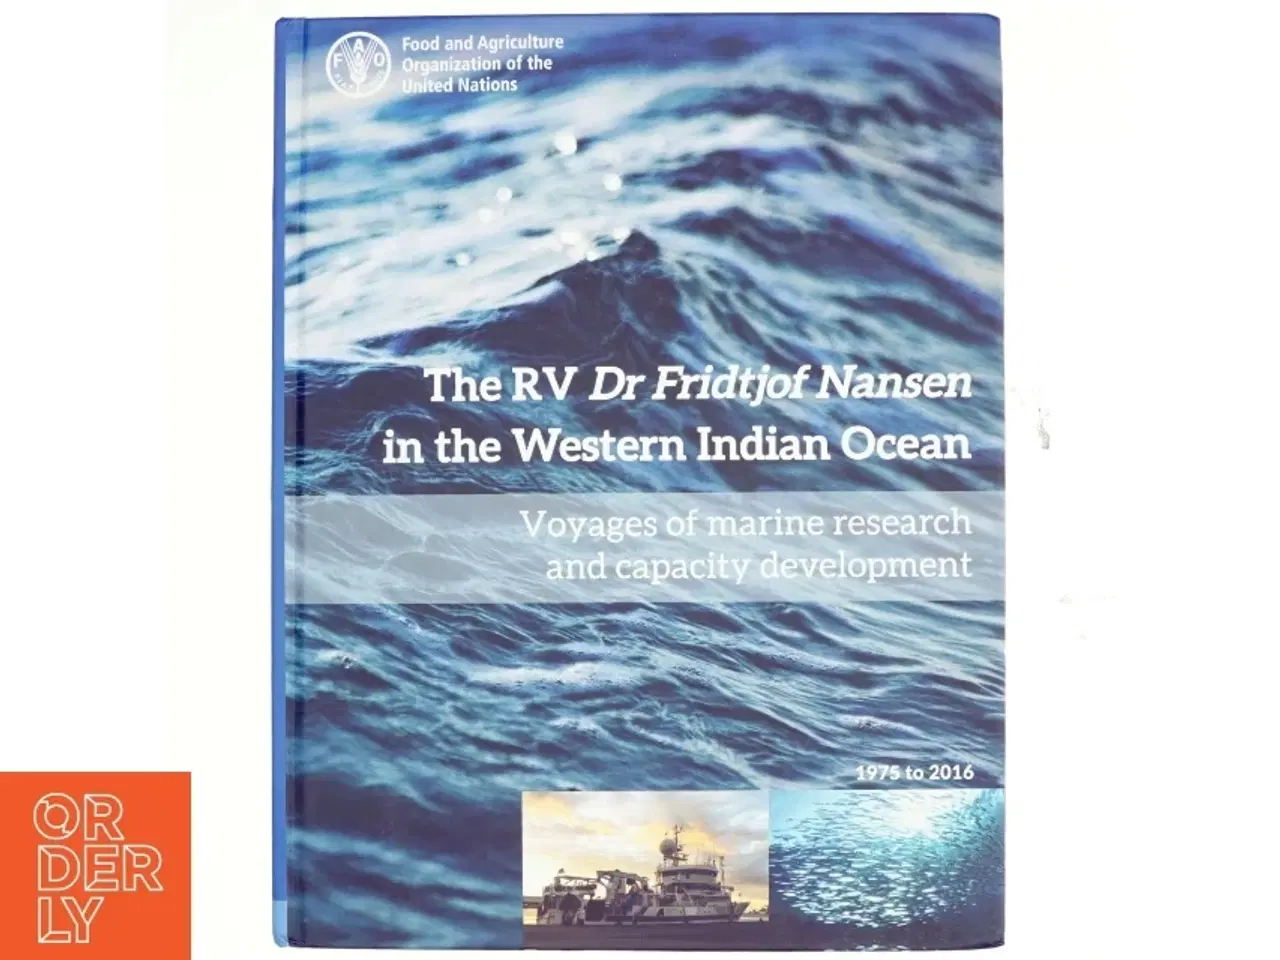 Billede 1 - The RV Dr Fridtjof Nansen in the Western Indian Ocean af Food and Agriculture Organization of the United Nations (Bog)